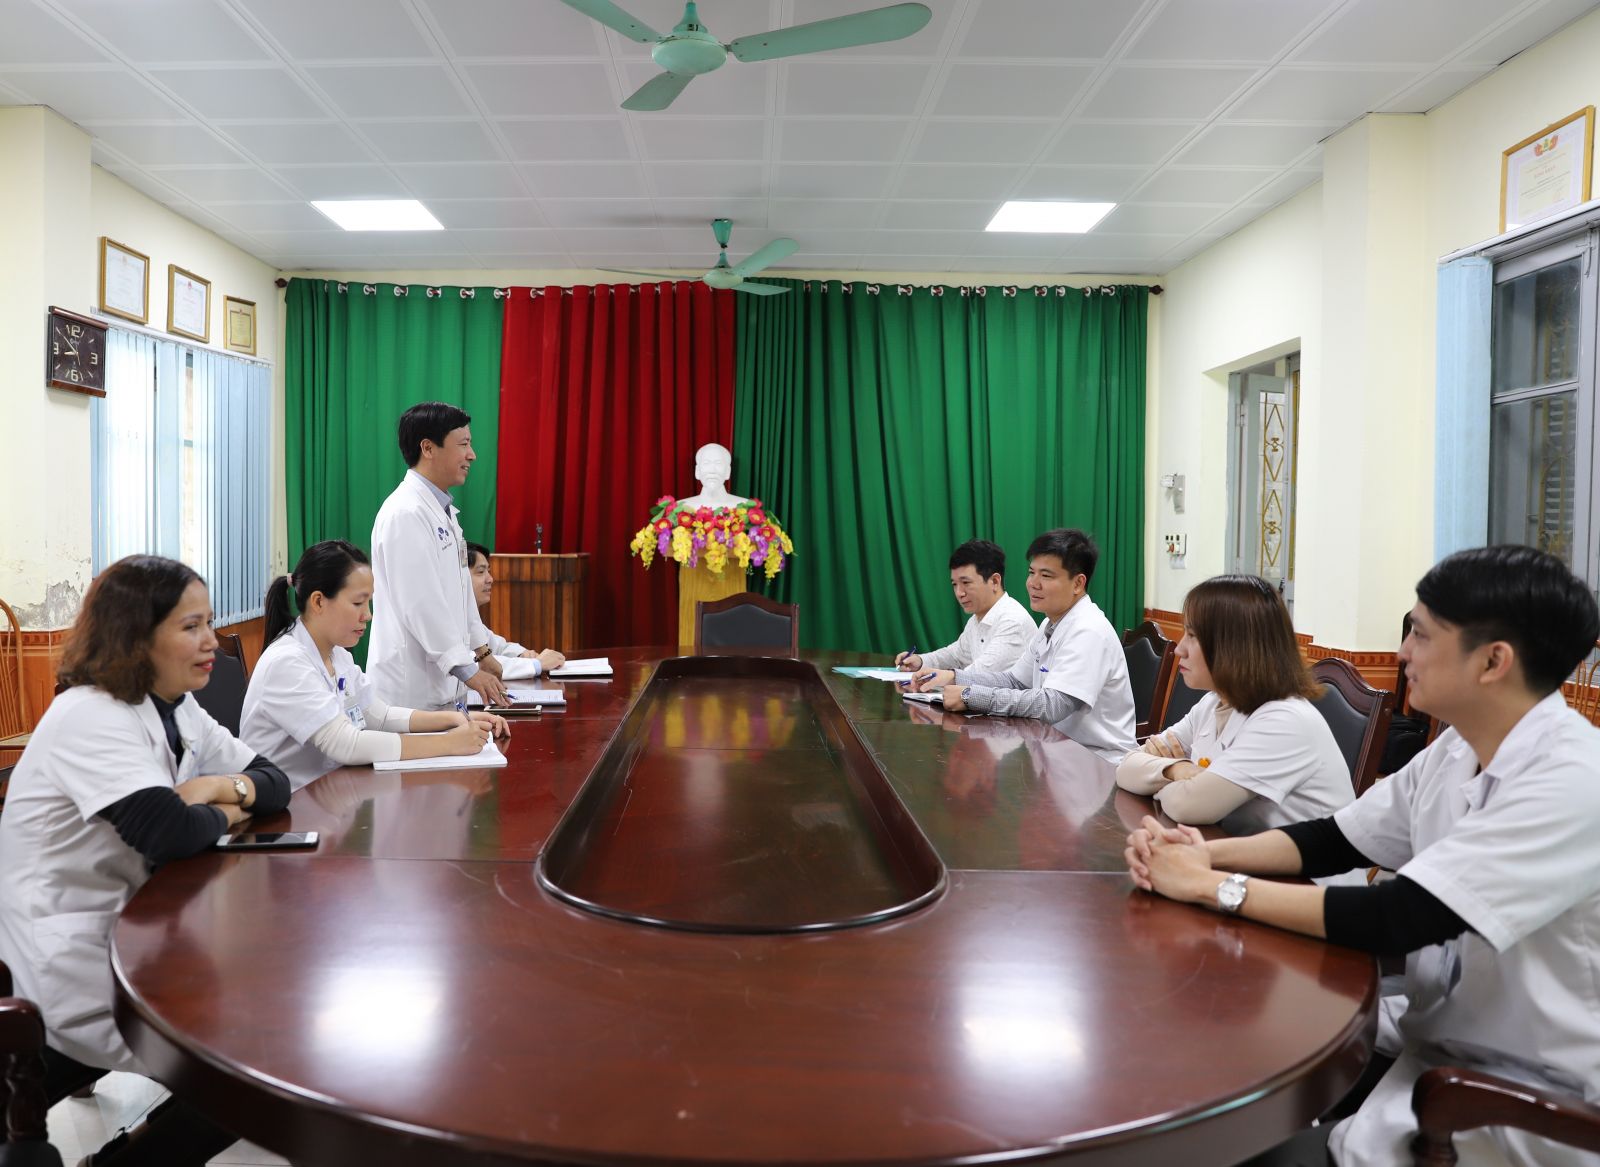  diễn tập sự cố bức xạ máy X-Quang tại Trung tâm y tế